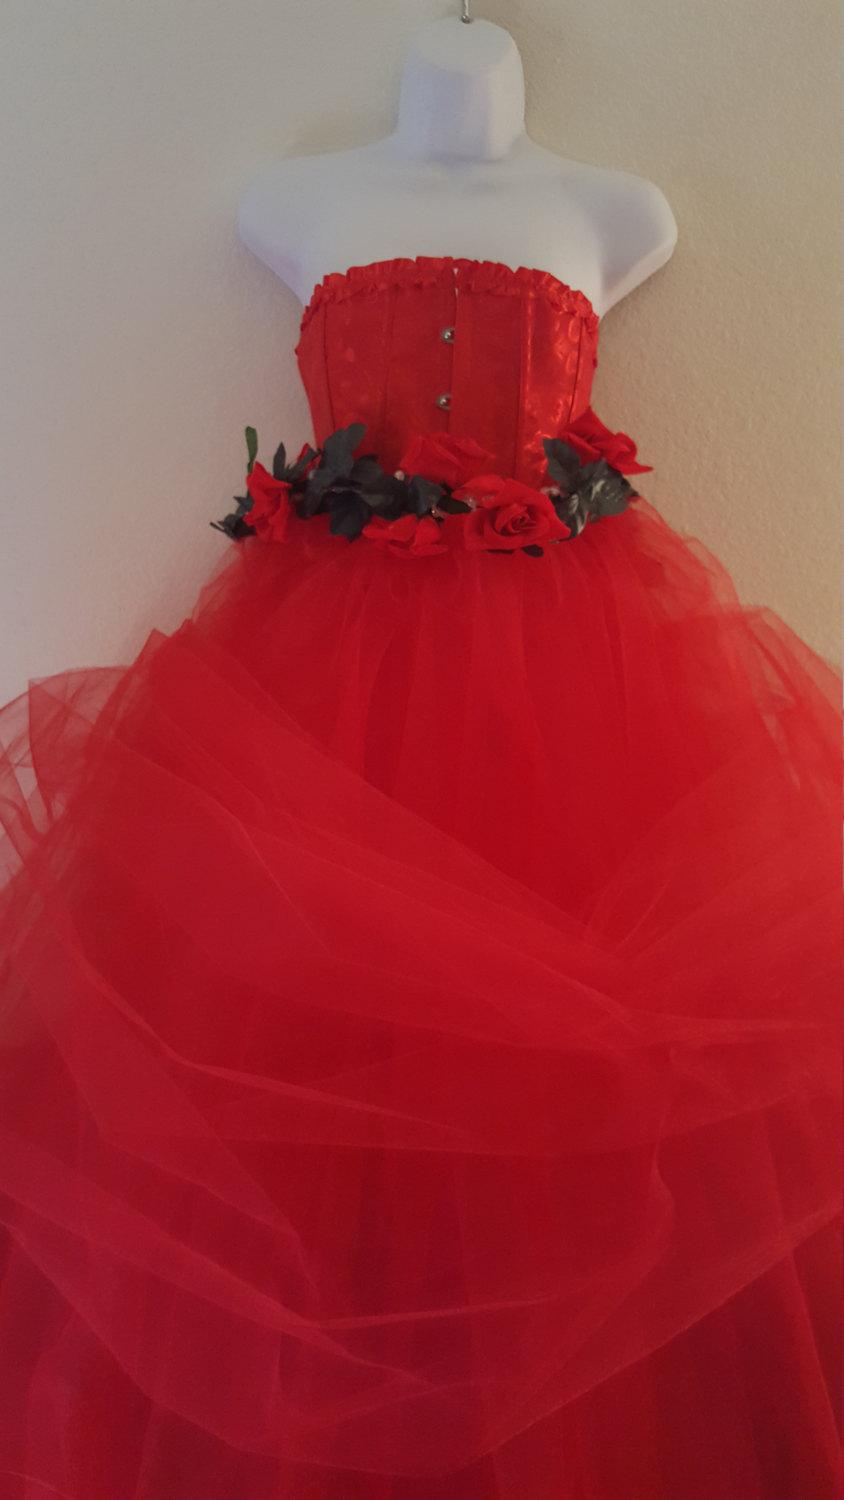 زفاف - Victorian Inspired Valentine Rose Goddess Romantic Red Corset Tulle Ball Gown Dress Bridal Wedding Gown Party Costume